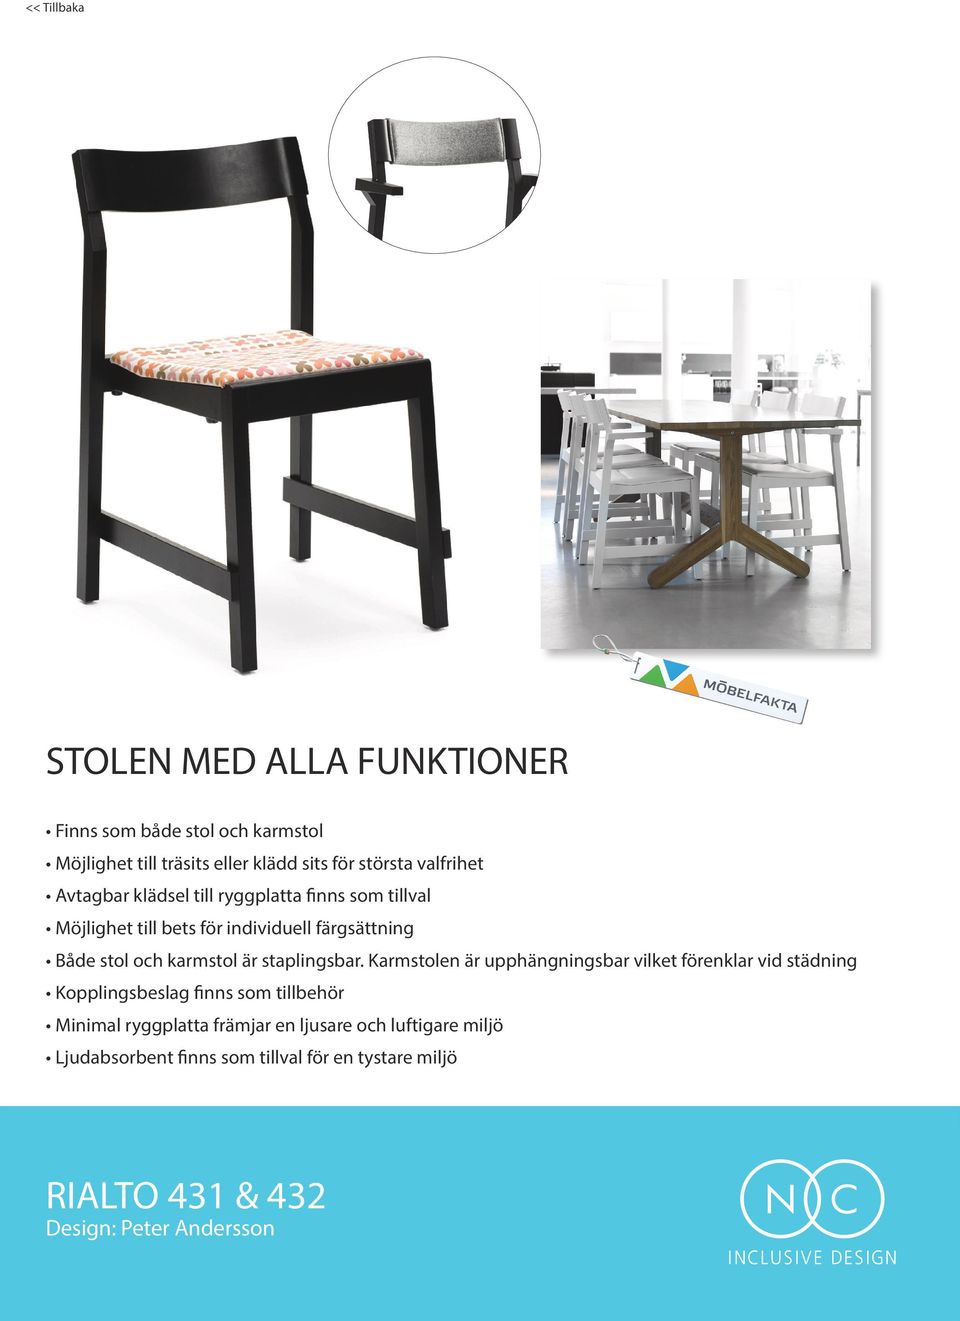 Karmstolen är upphängningsbar vilket förenklar vid städning Kopplingsbeslag finns som tillbehör Minimal ryggplatta